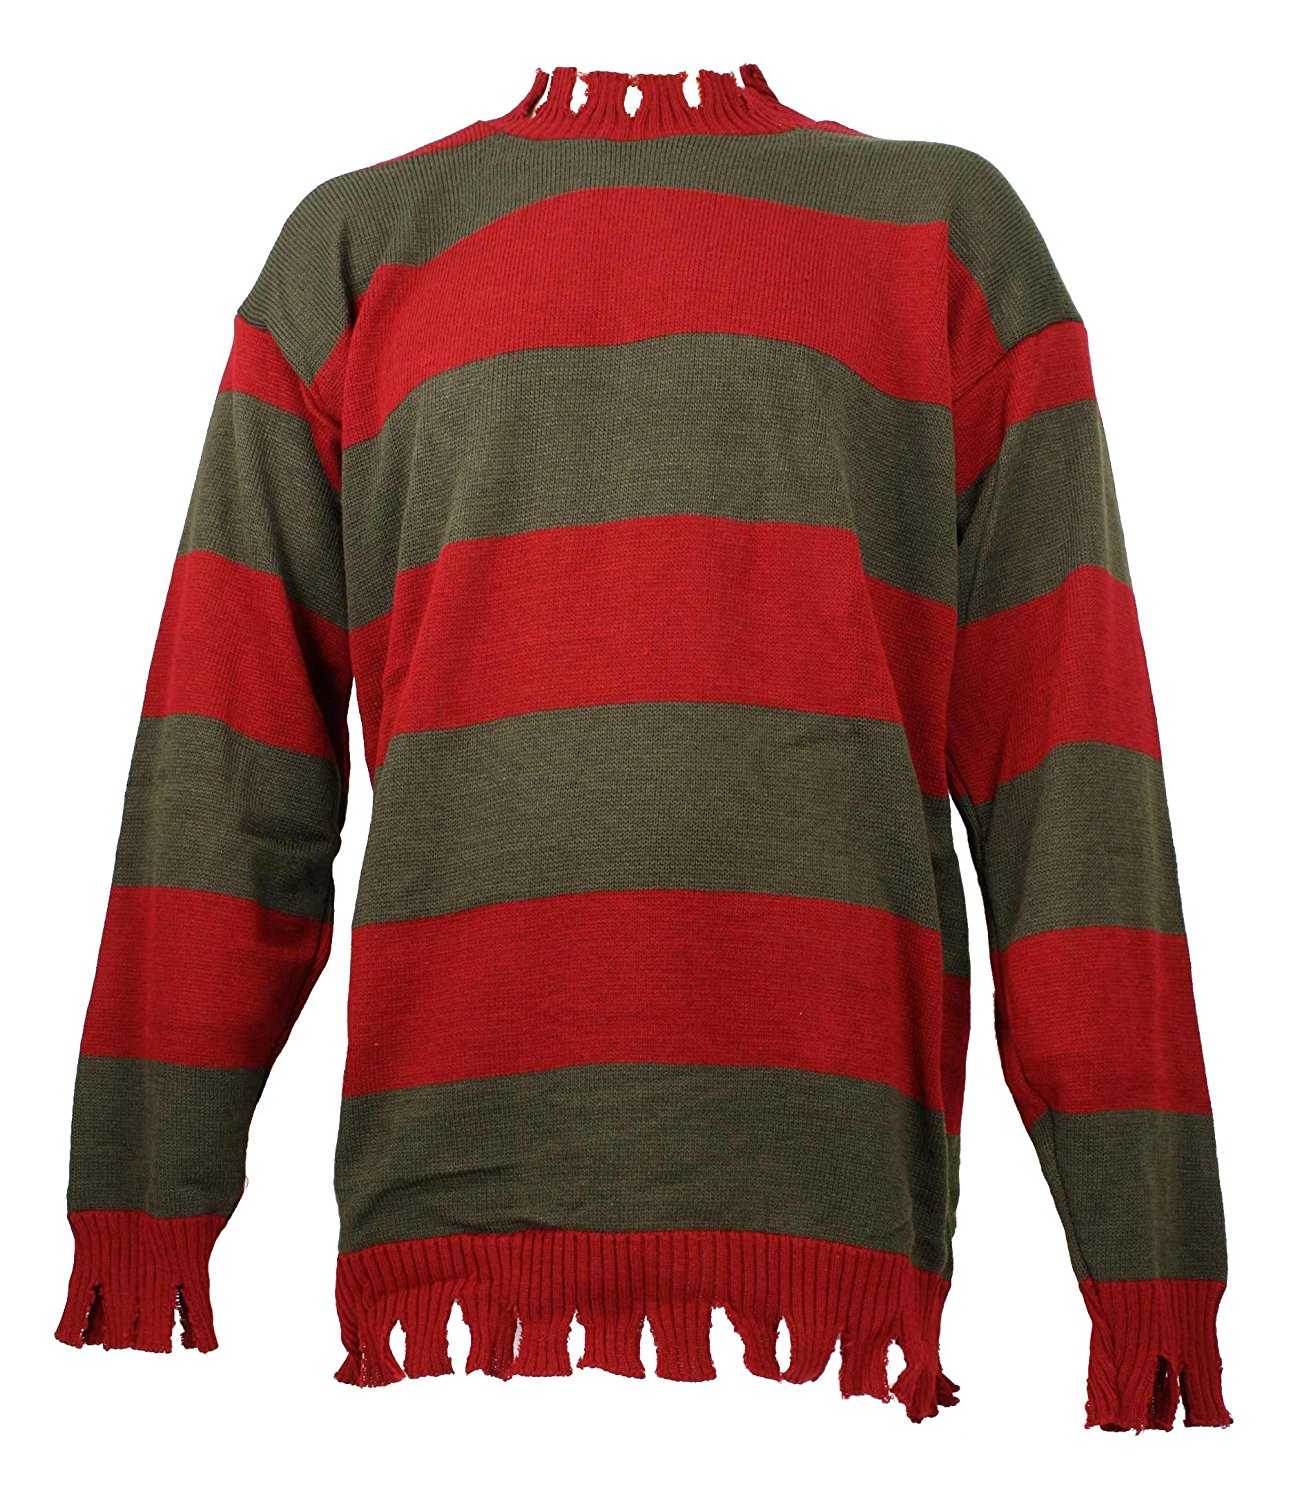 Freddy Krueger свитер.